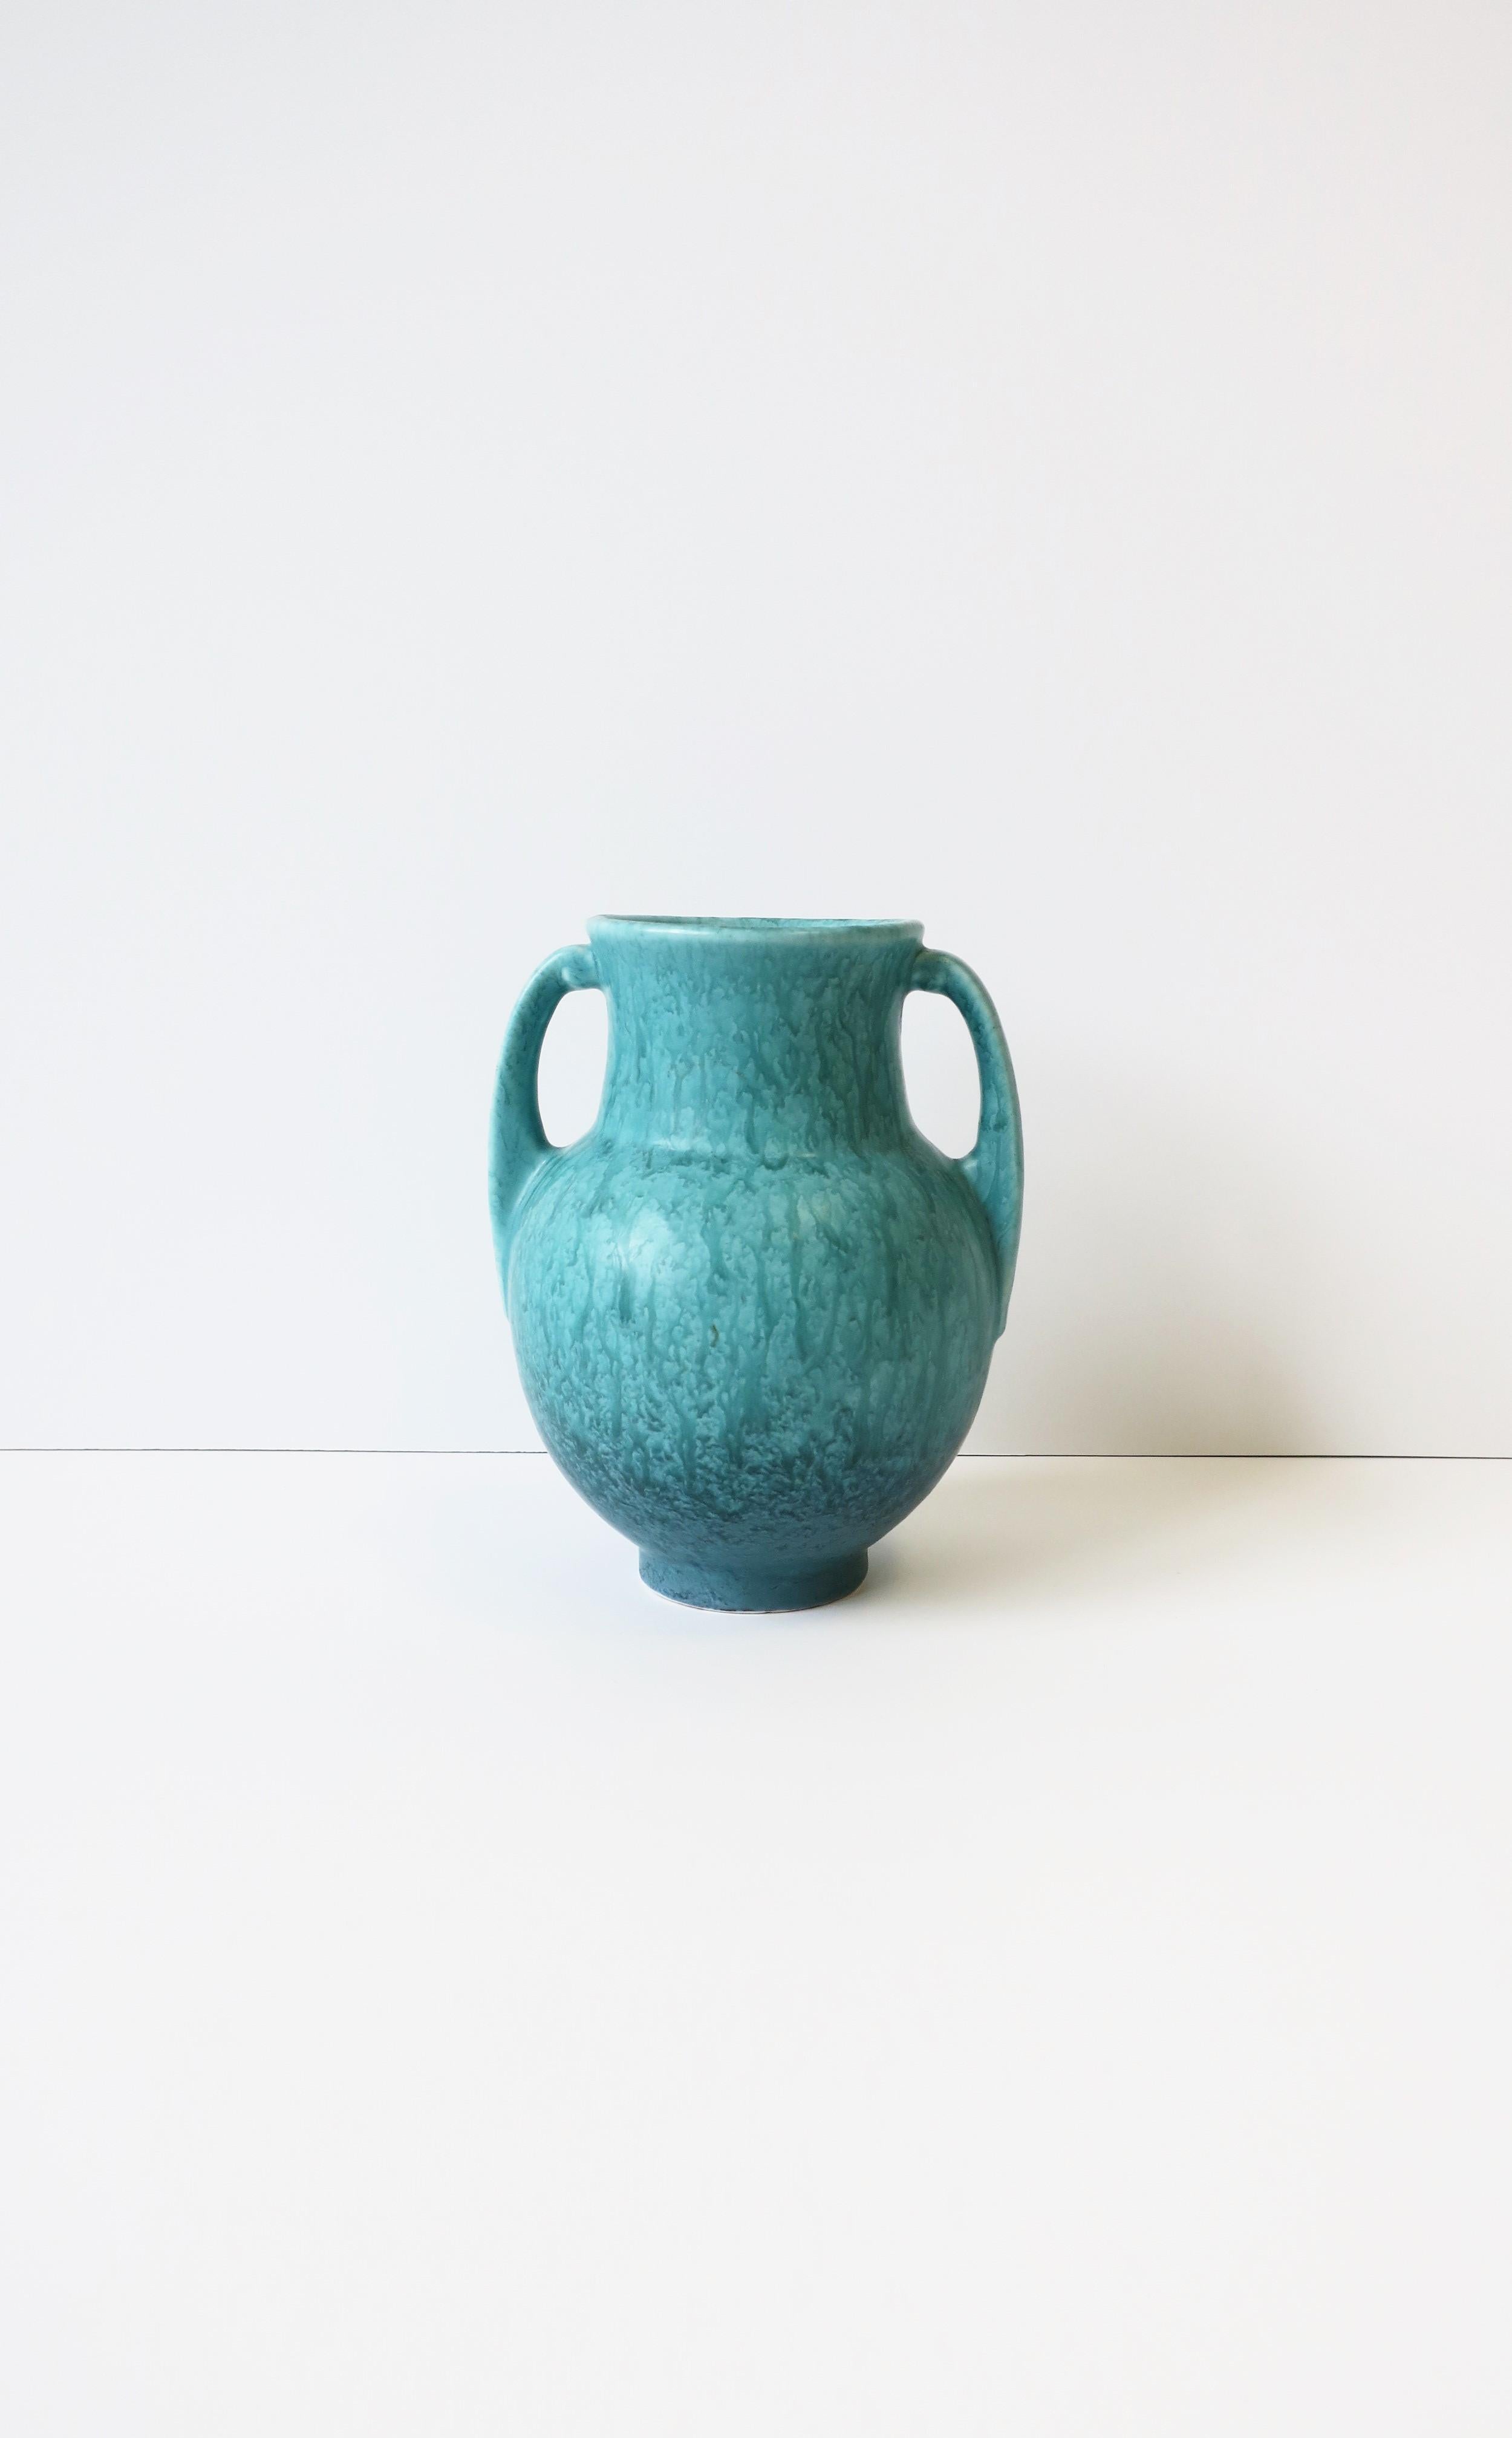 Magnifique vase moderne en poterie Amphora bleu turquoise, vers le début du 20e siècle, États-Unis. Dimensions : 5